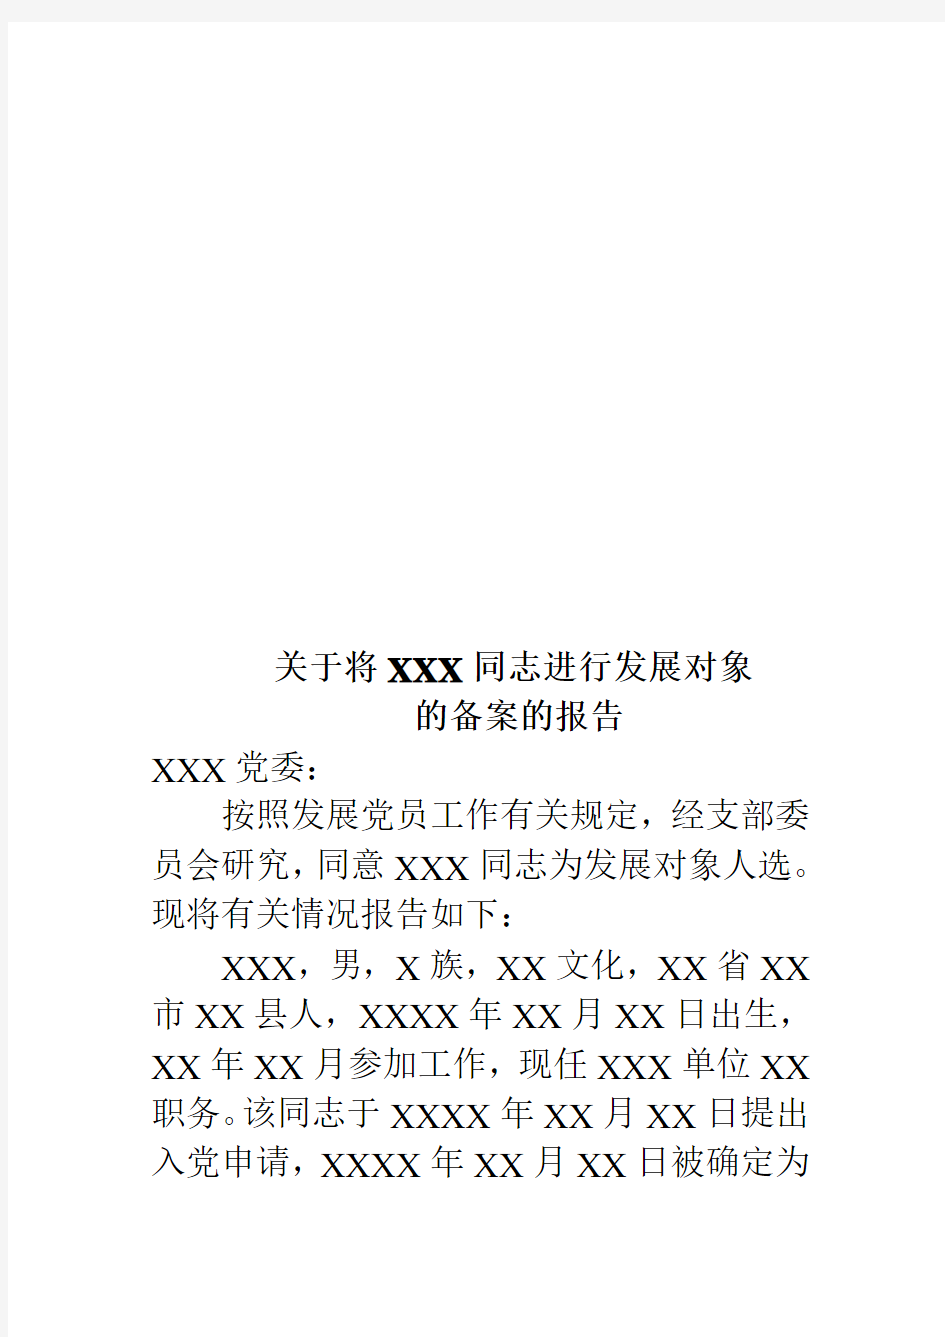 9、关于将XXX同志进行入党积极分子备案的报告